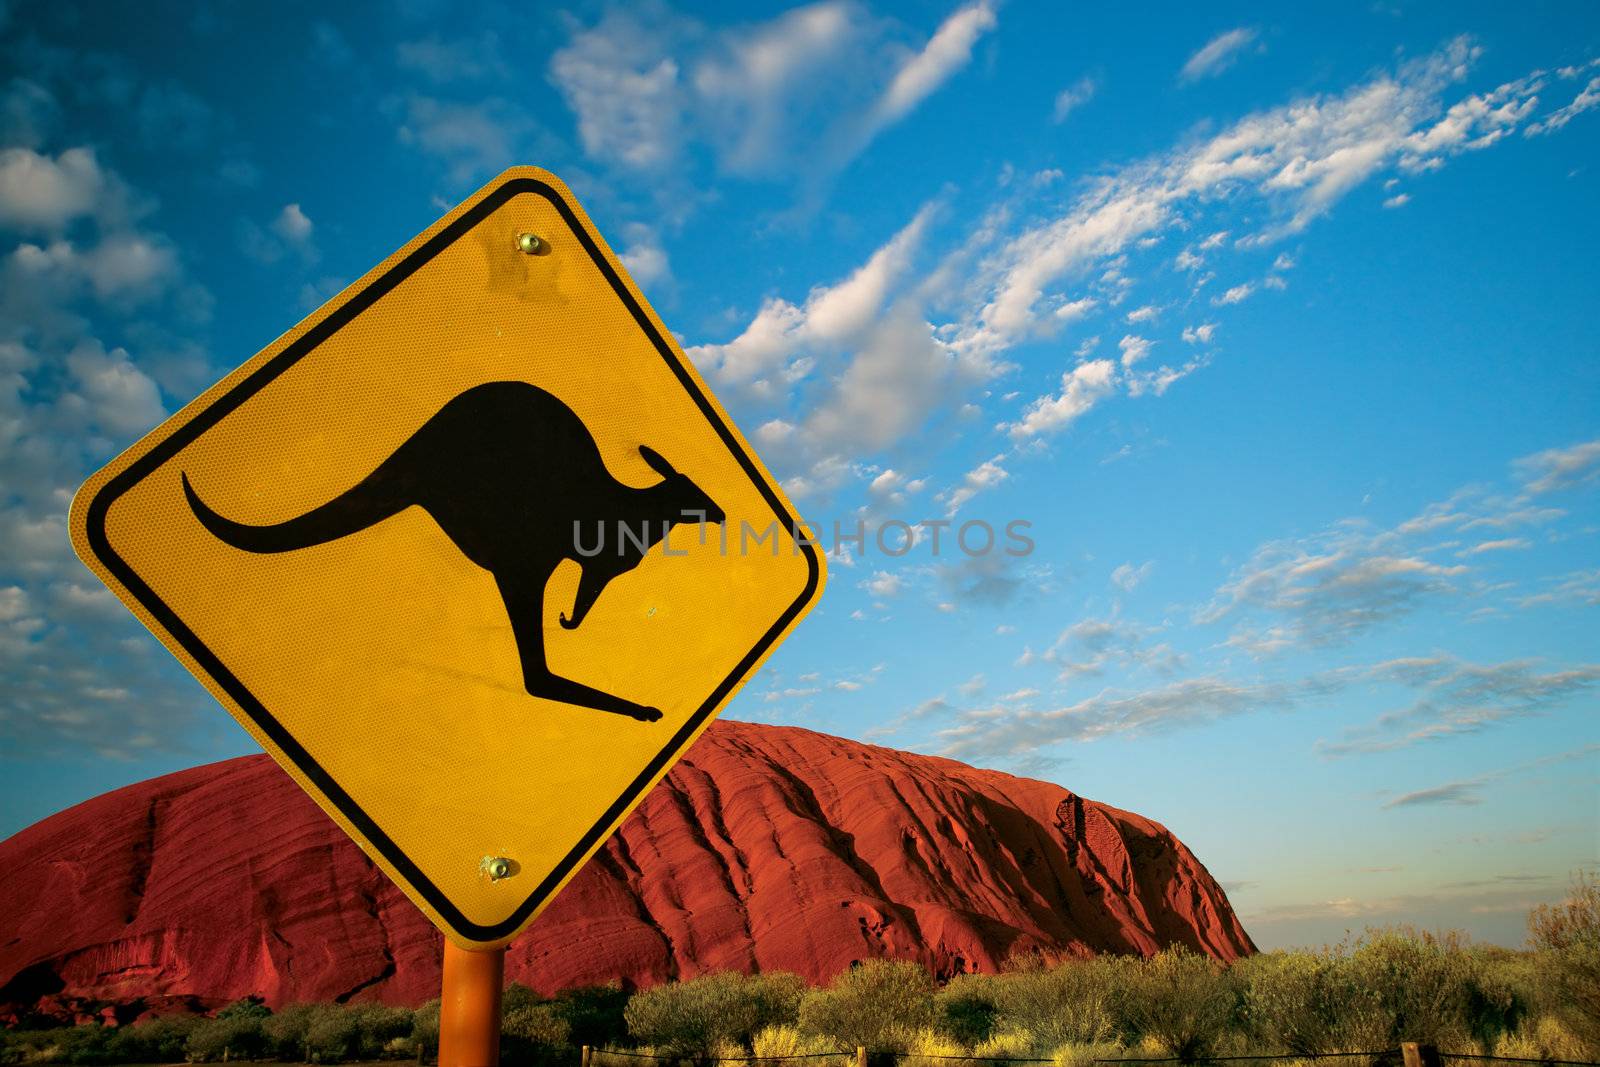 Kangaroo rock by sumners